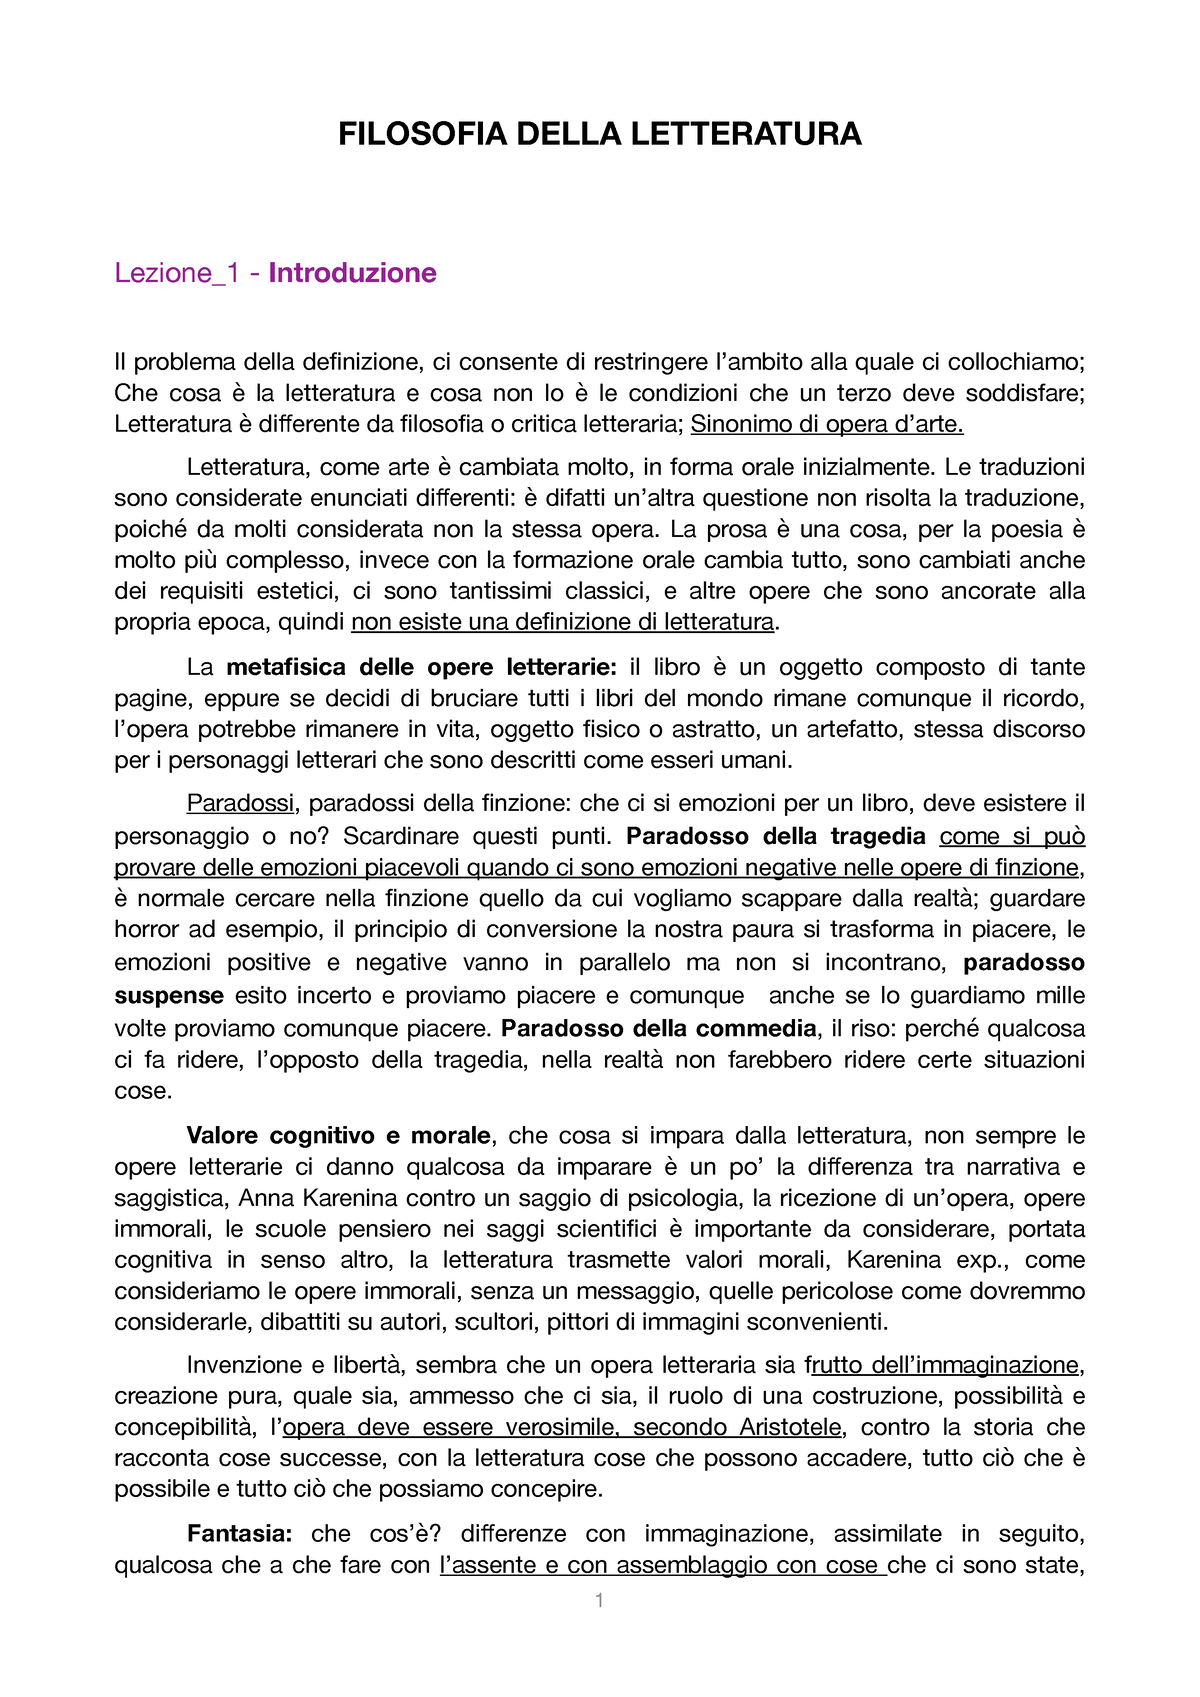 Appunti filosofia della letteratura - FILOSOFIA DELLA LETTERATURA Lezione_1  - Introduzione Il - Studocu